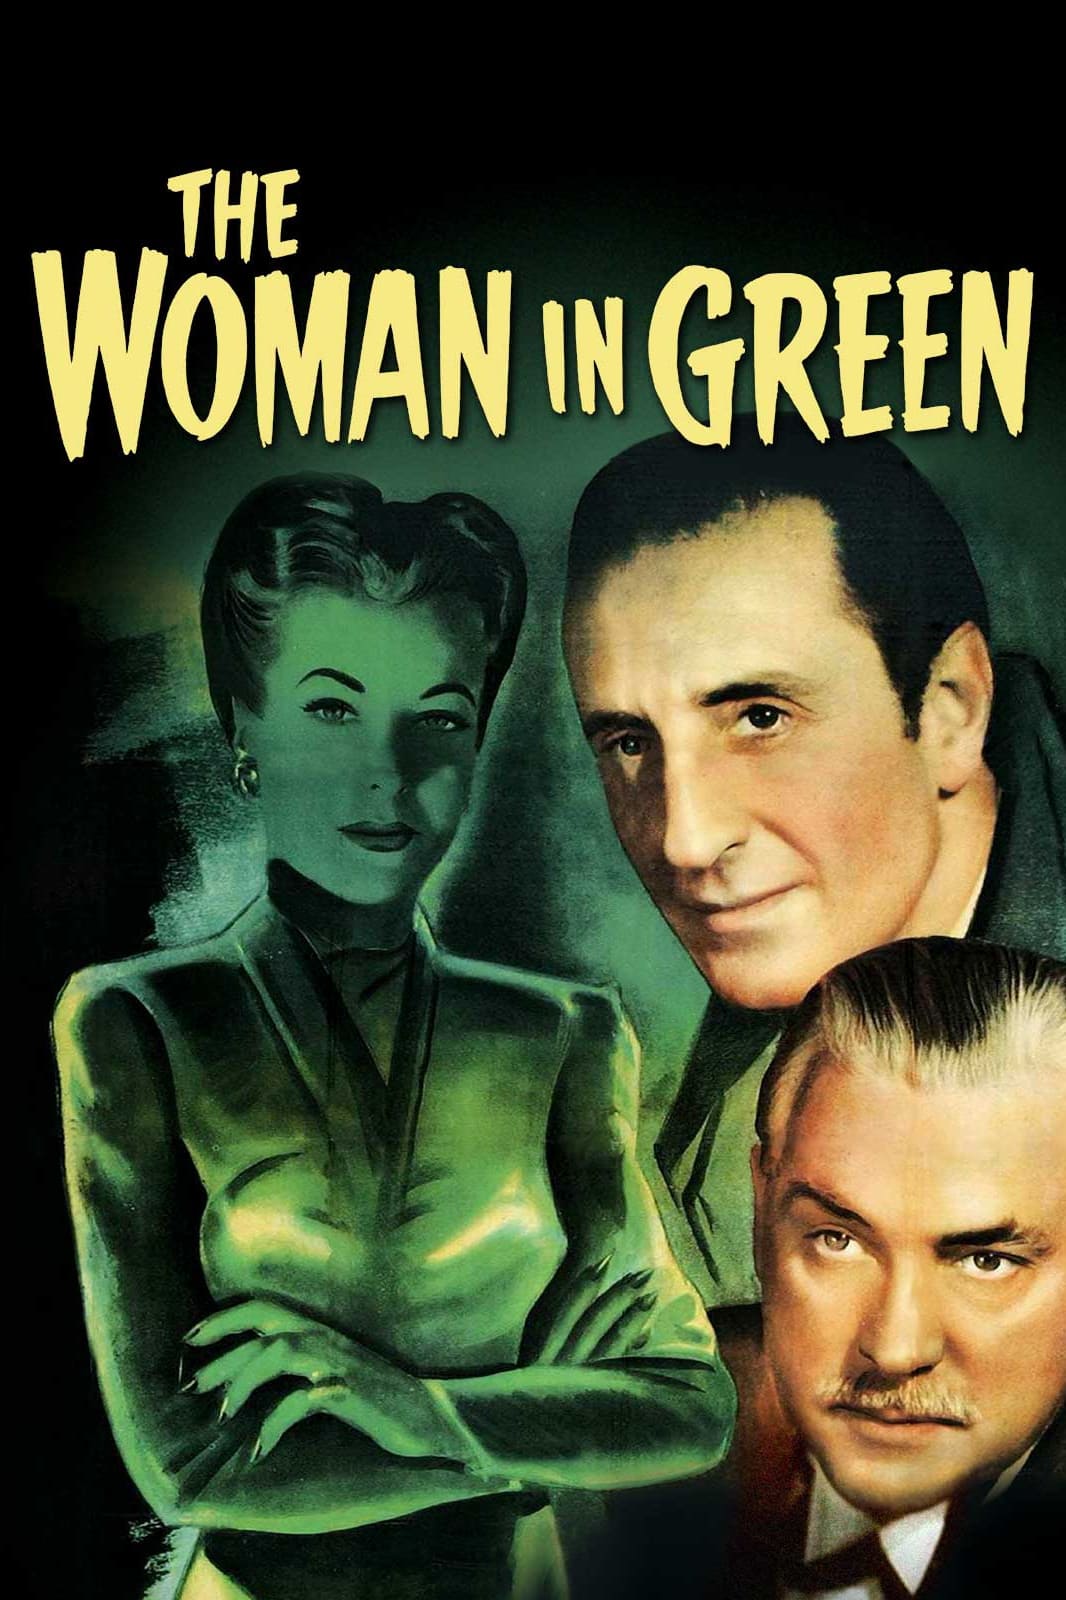 A Mulher de Verde (1945)